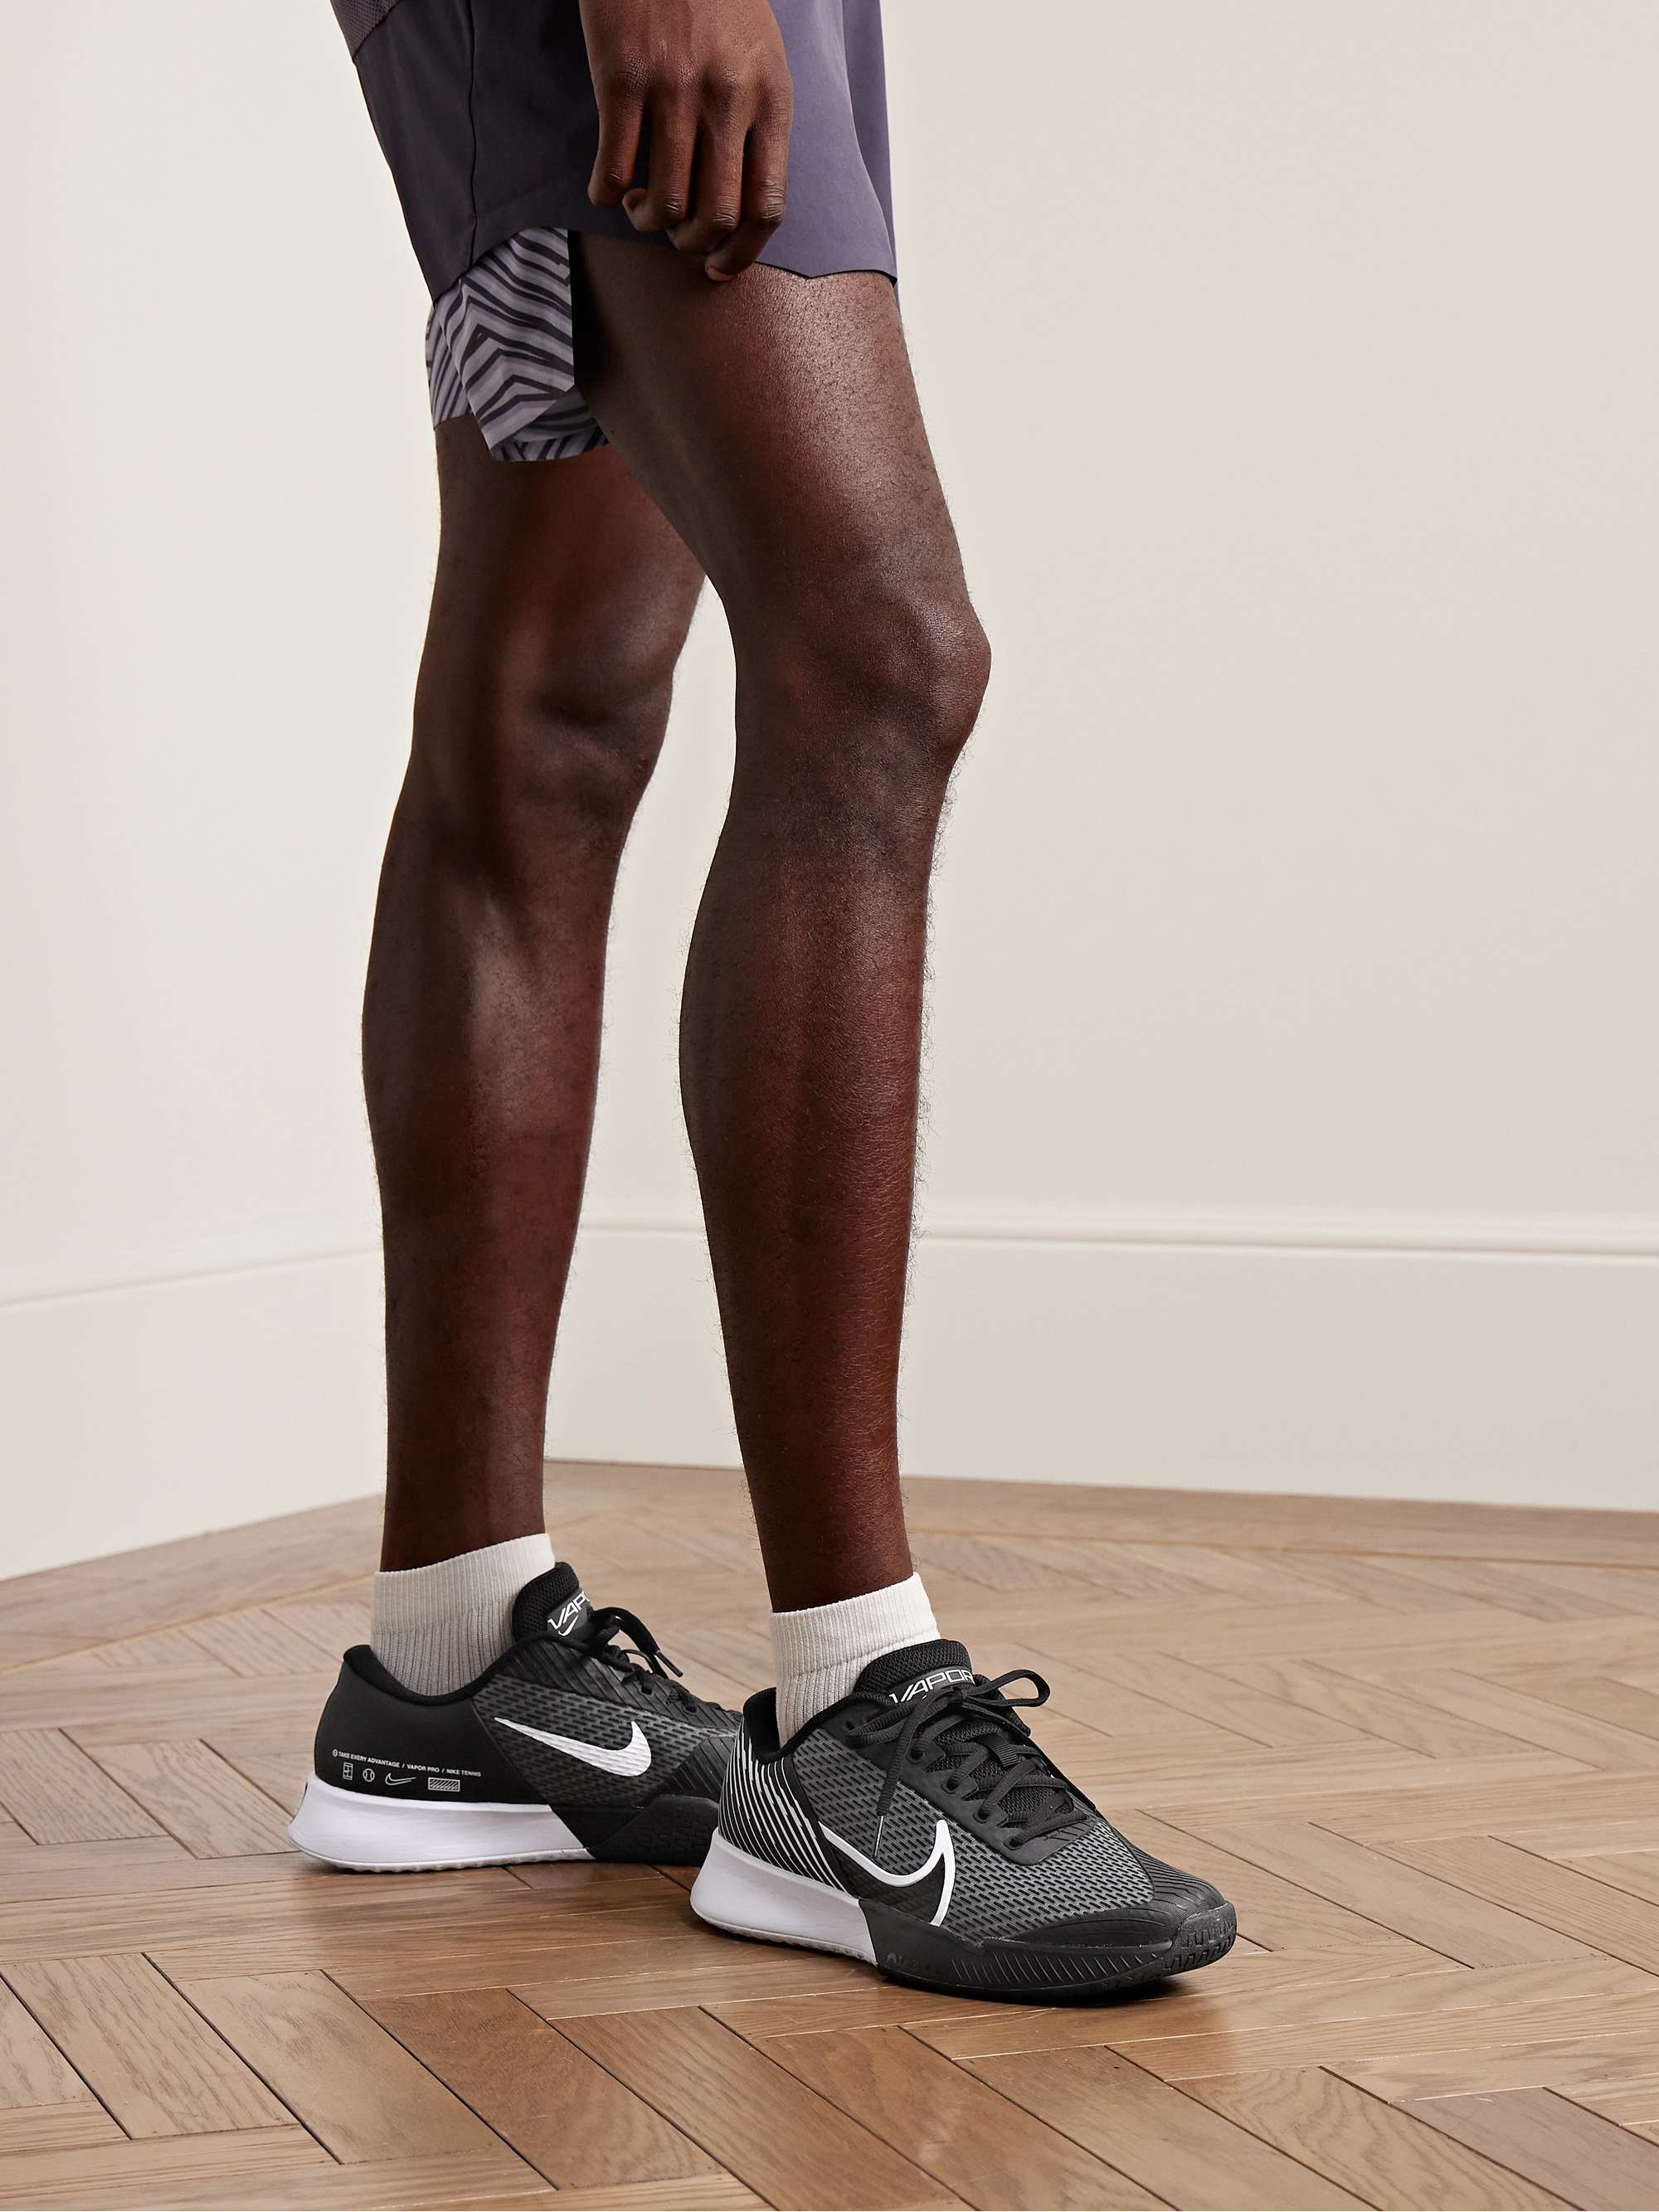 NIKE TENNIS NikeCourt Air Zoom Vapor Pro 2 Rubber-Trimmed Mesh Tennis  Sneakers for Men | MR PORTER